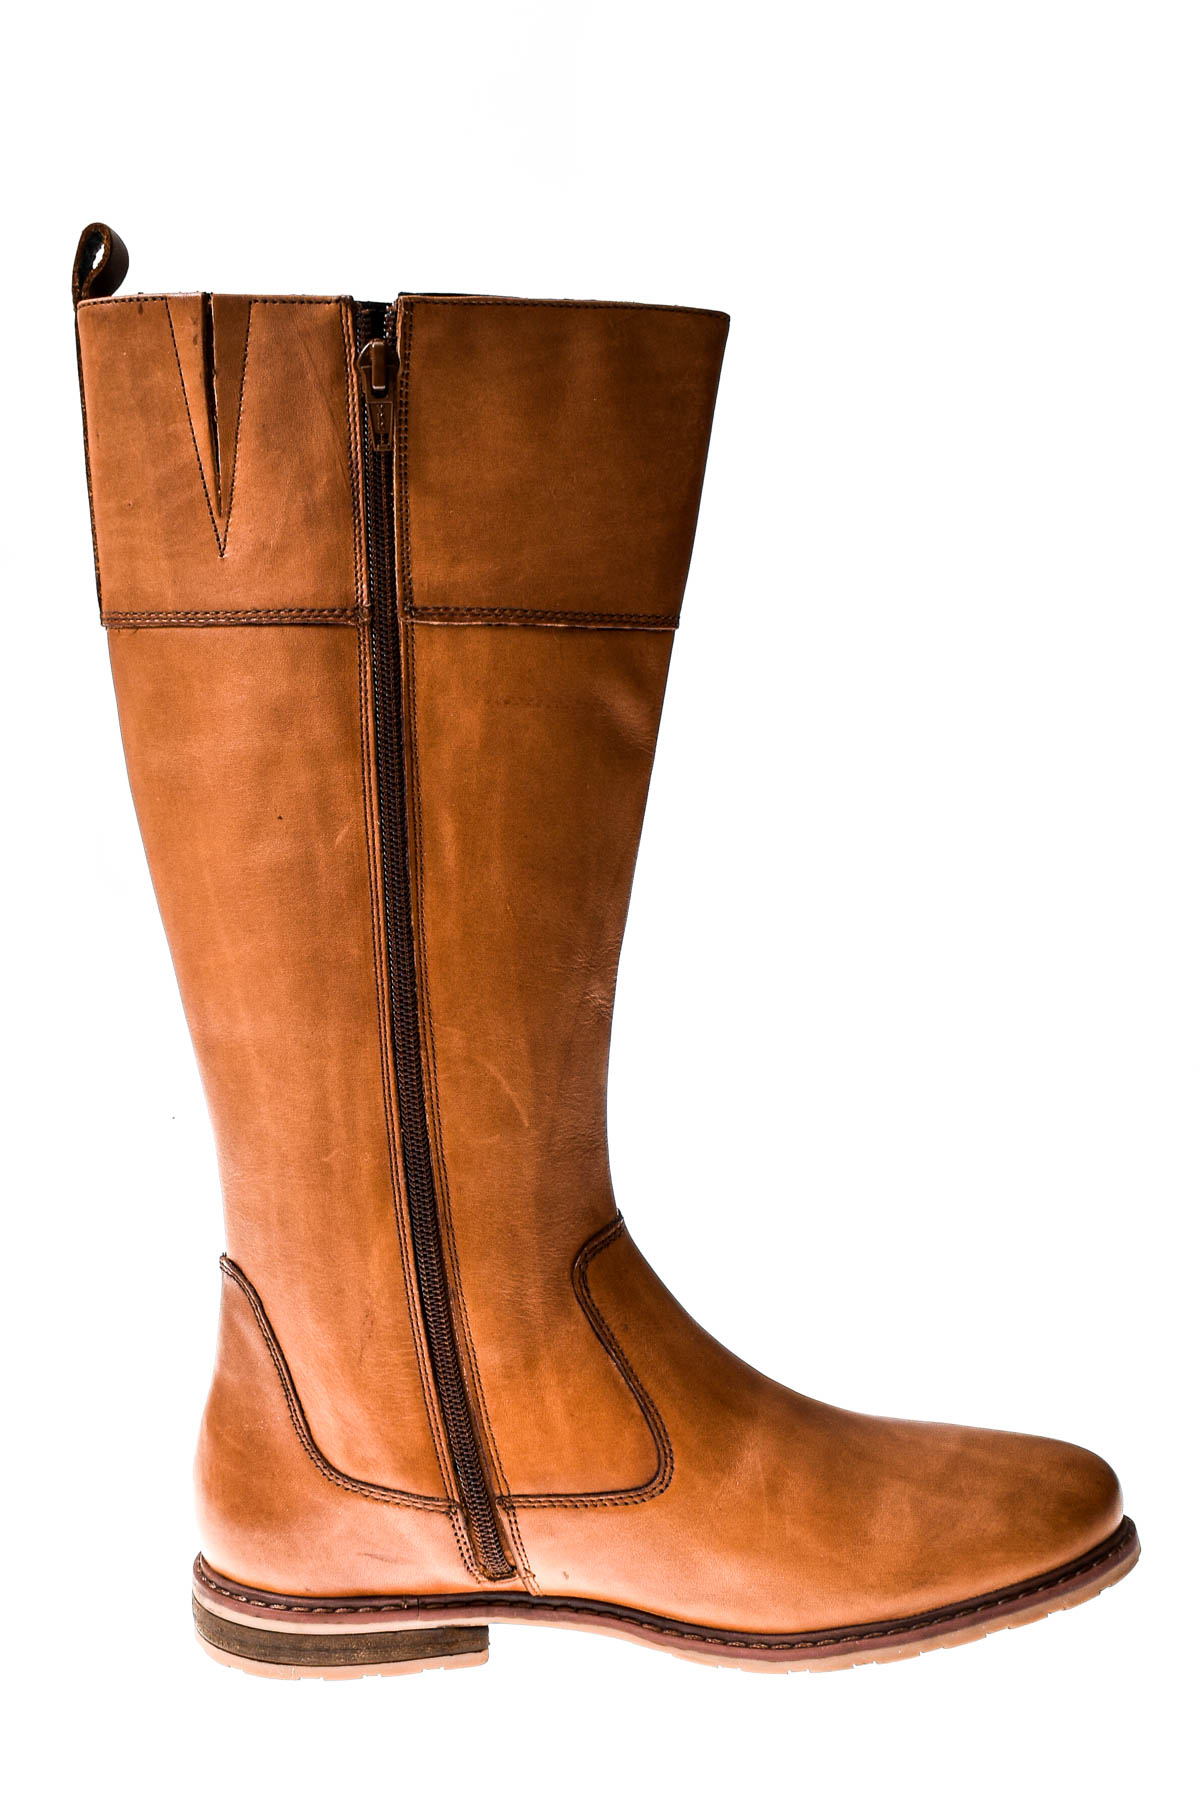 Women's boots - PAUL VESTERBRO - 2